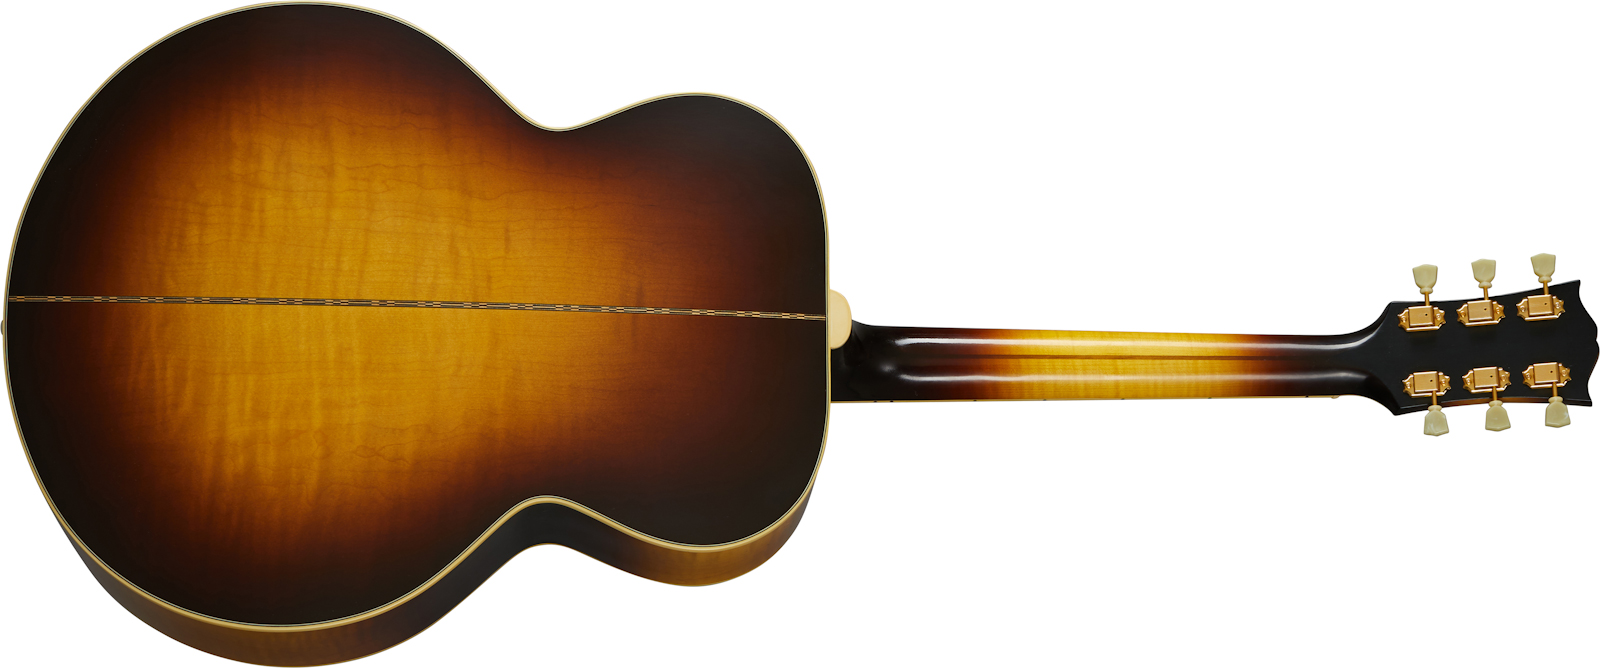 Gibson Custom Shop Sj-200 1957 Super Jumbo Epicea Erable Rw - Vos Vintage Sunburst - Guitare Acoustique - Variation 1